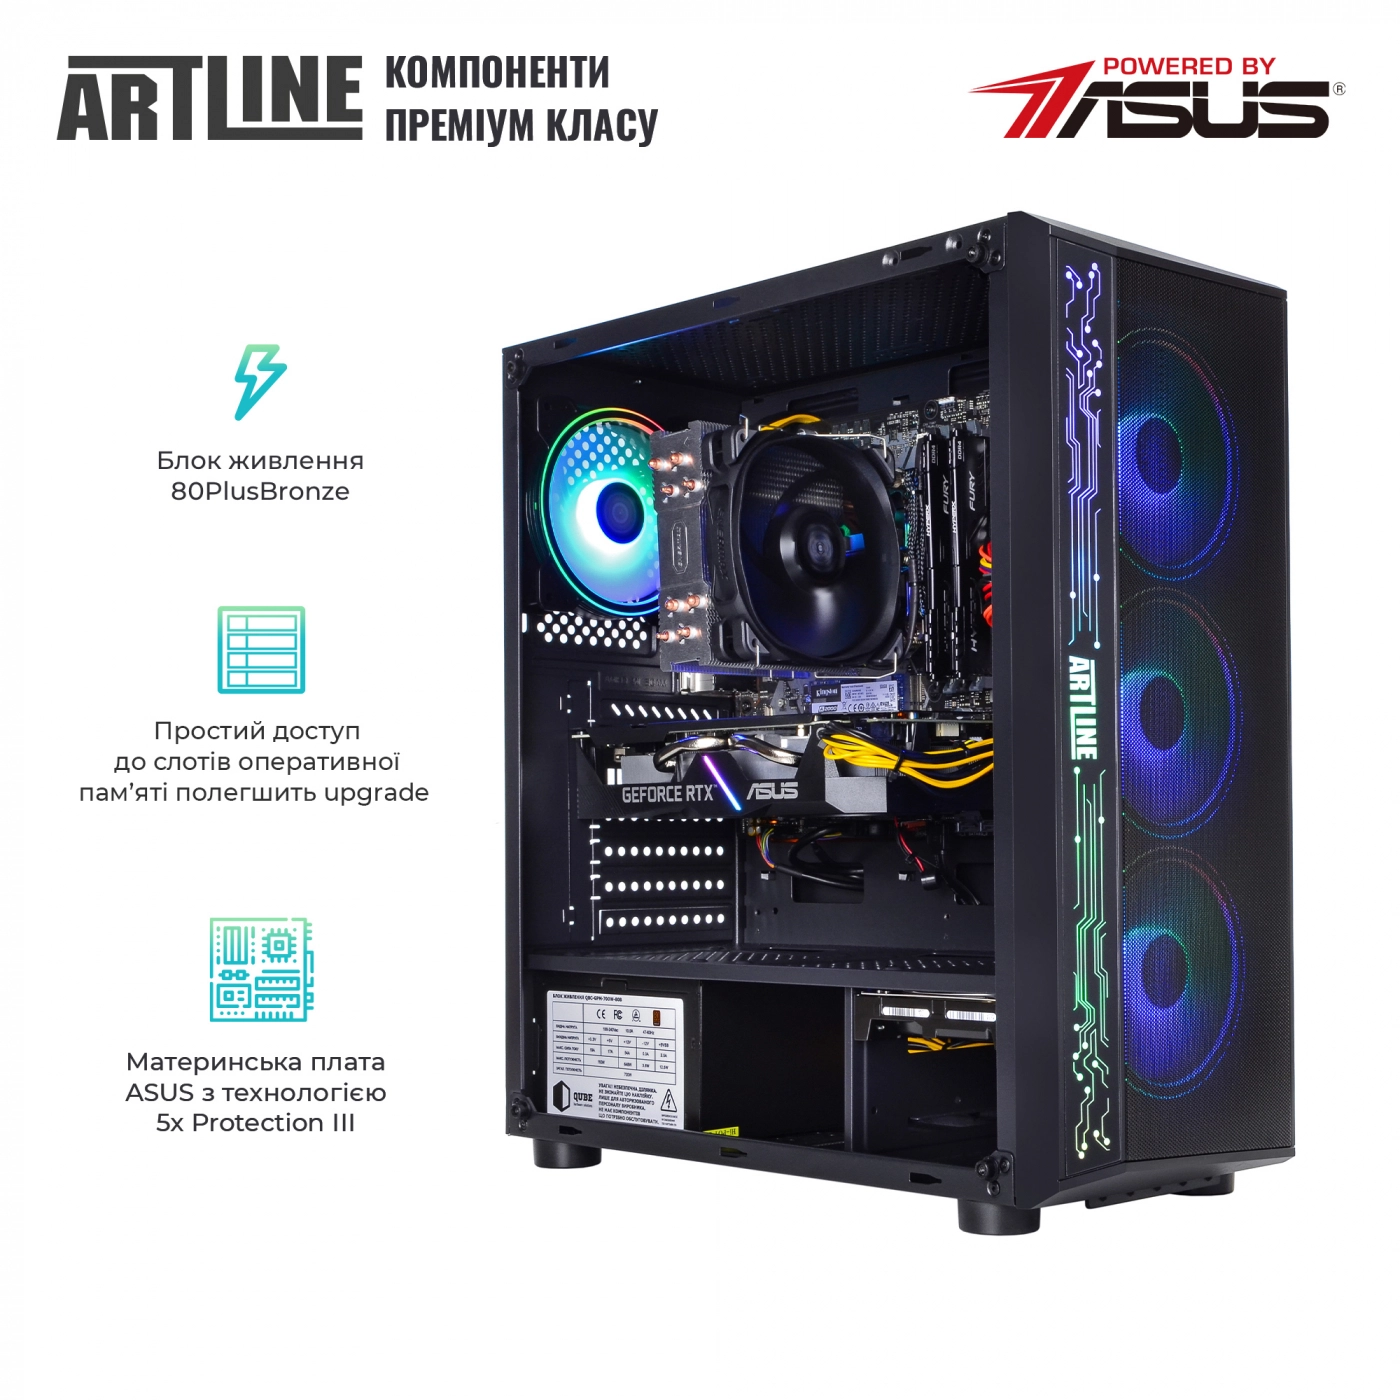 Купить Компьютер ARTLINE Gaming X53v34 - фото 3